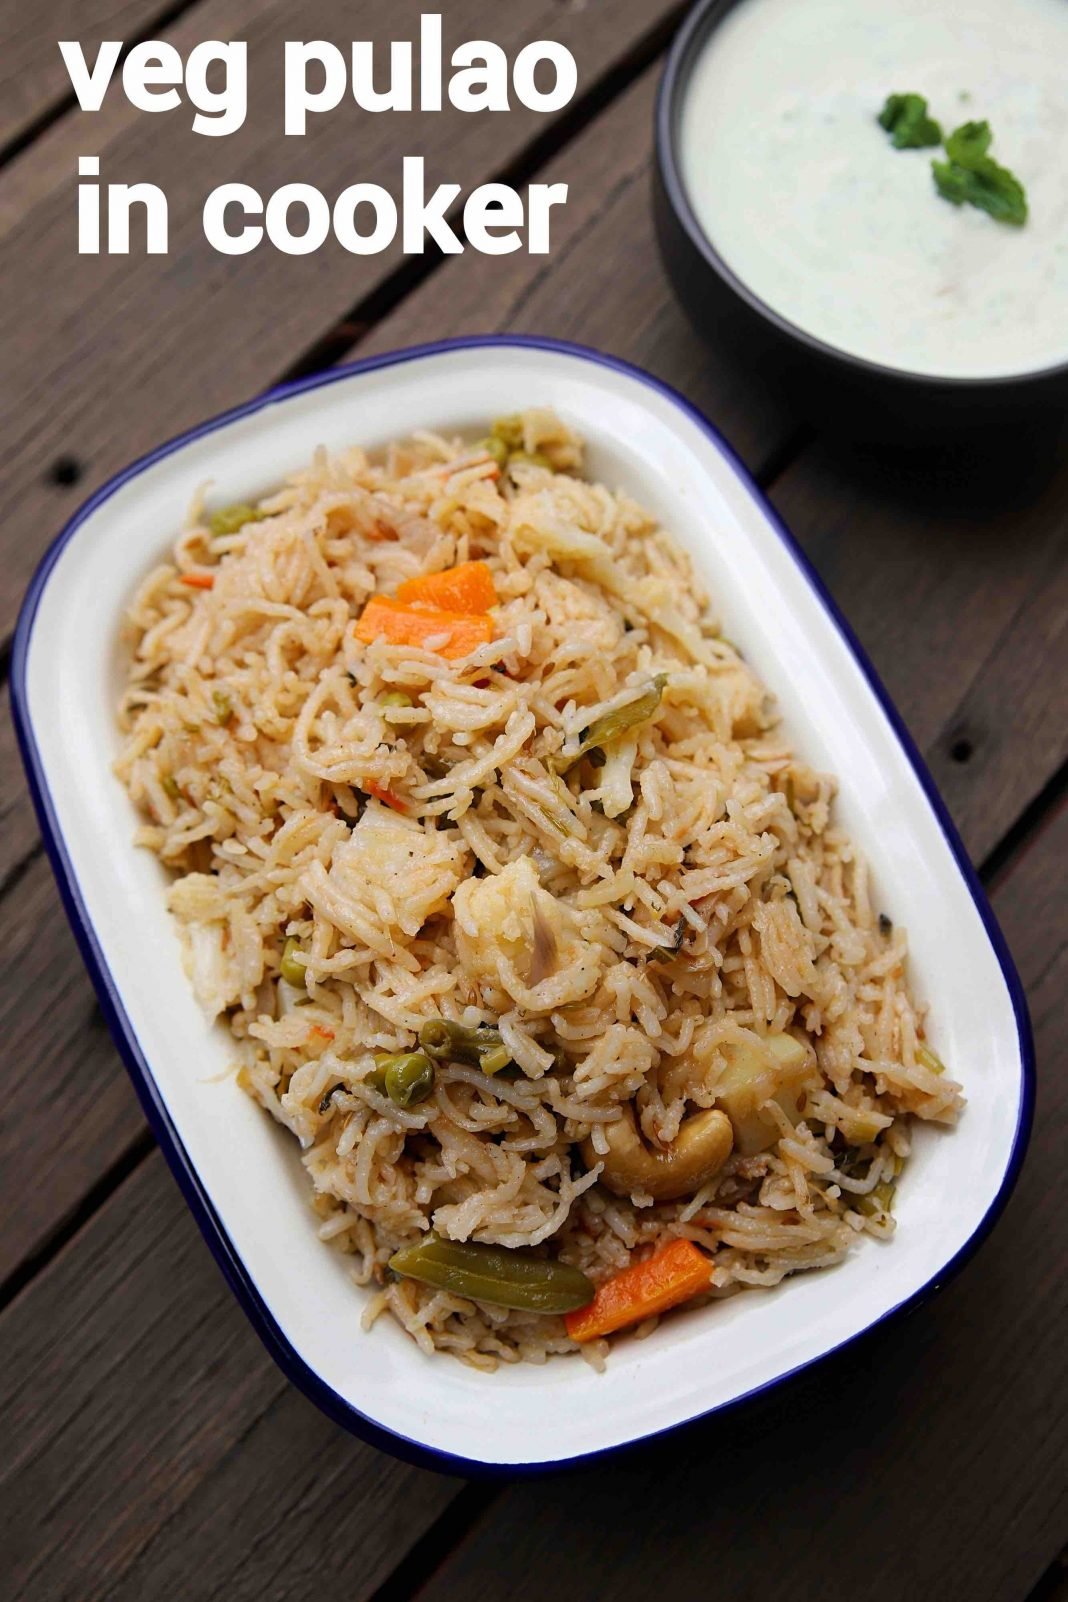 veg pulao recipe | vegetable pulao | how to make veg pulav in cooker